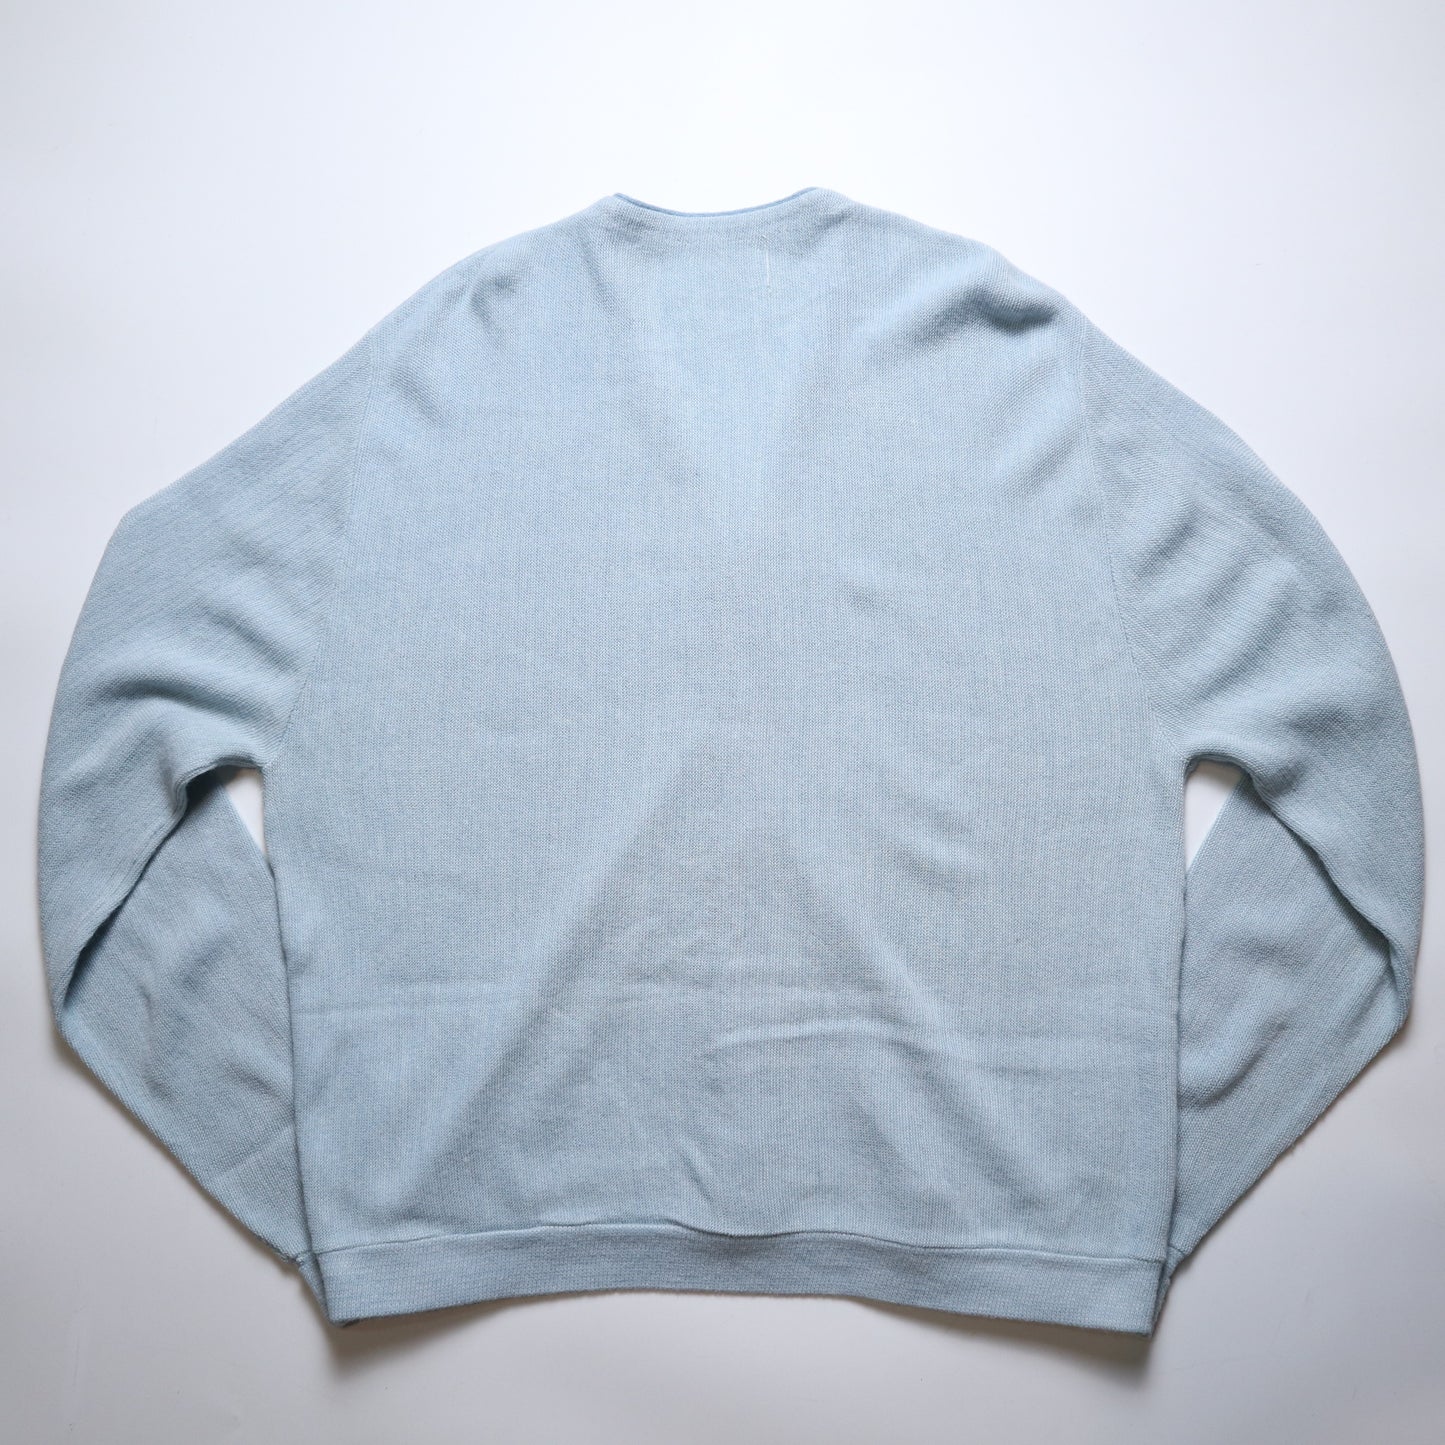 1980s 淺藍色Cardigan 開襟外套 針織毛衣